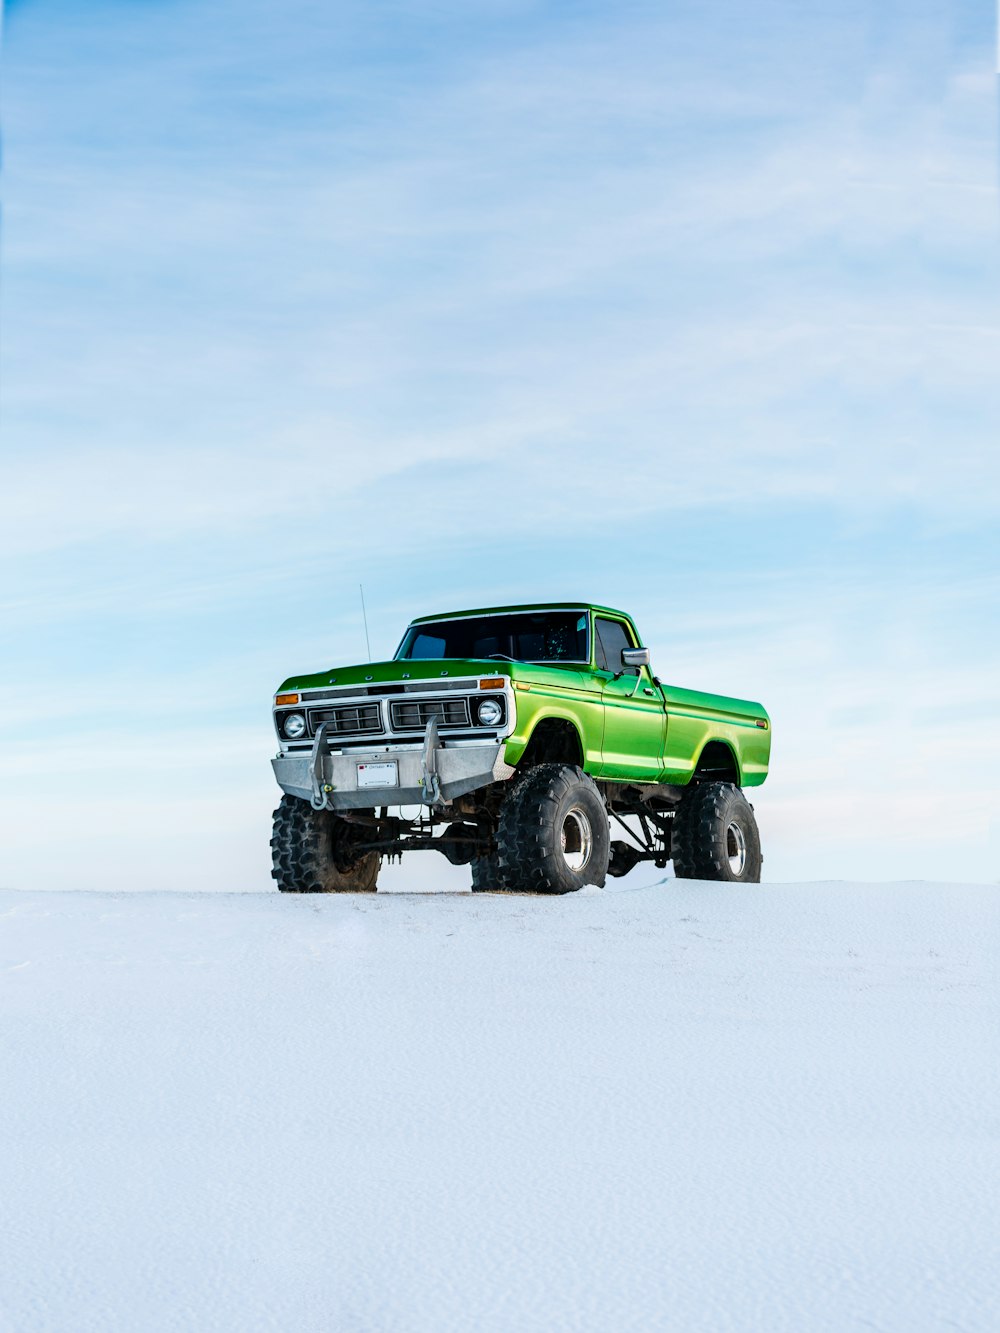 겨울철 눈 위의 녹색 오프로드 차량